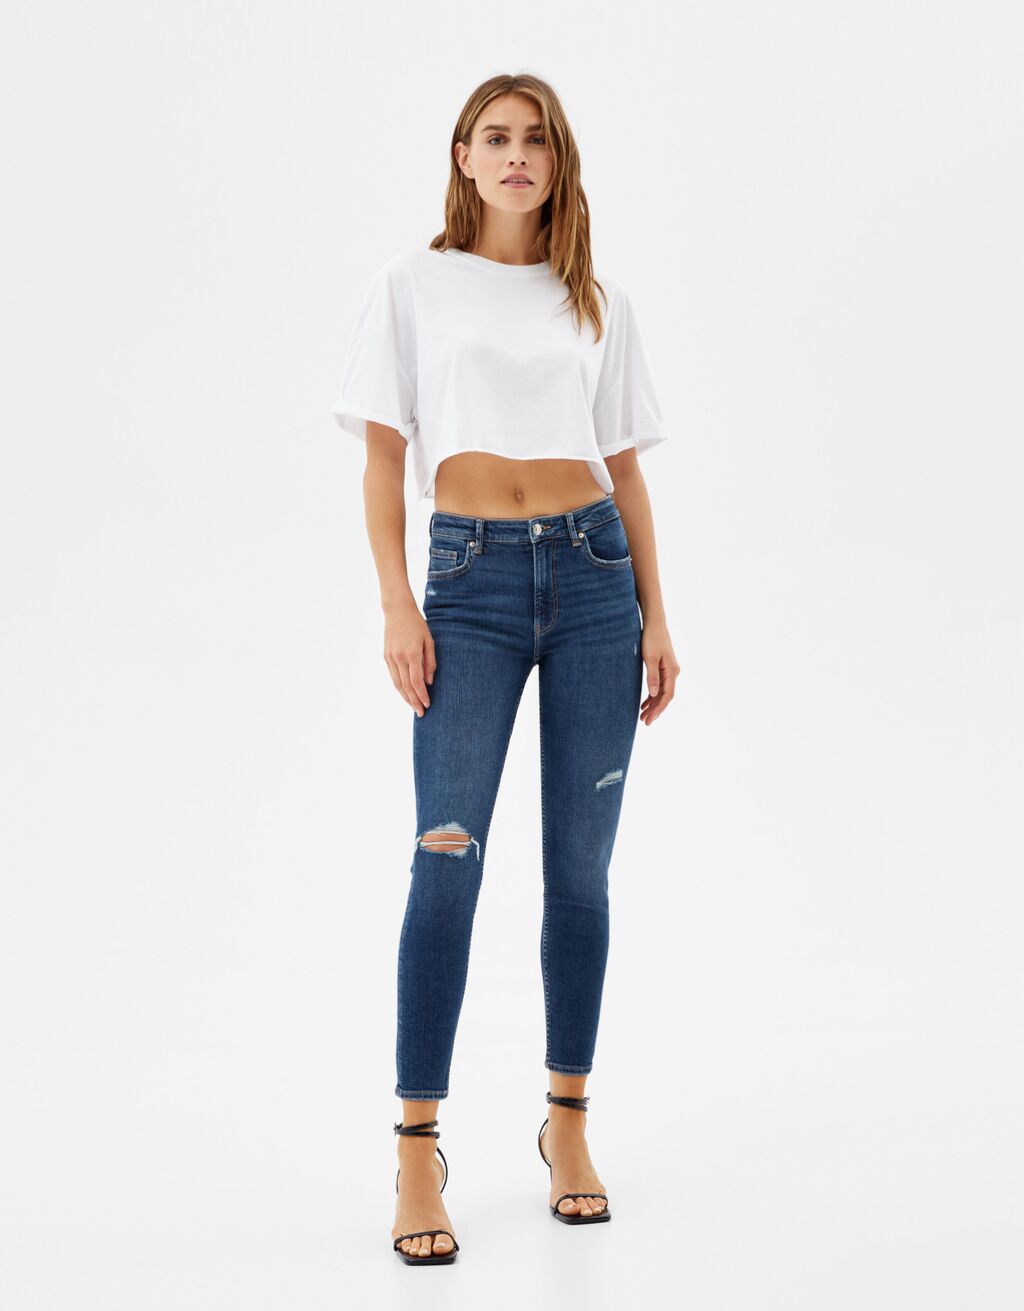 Low waist skinny jeans